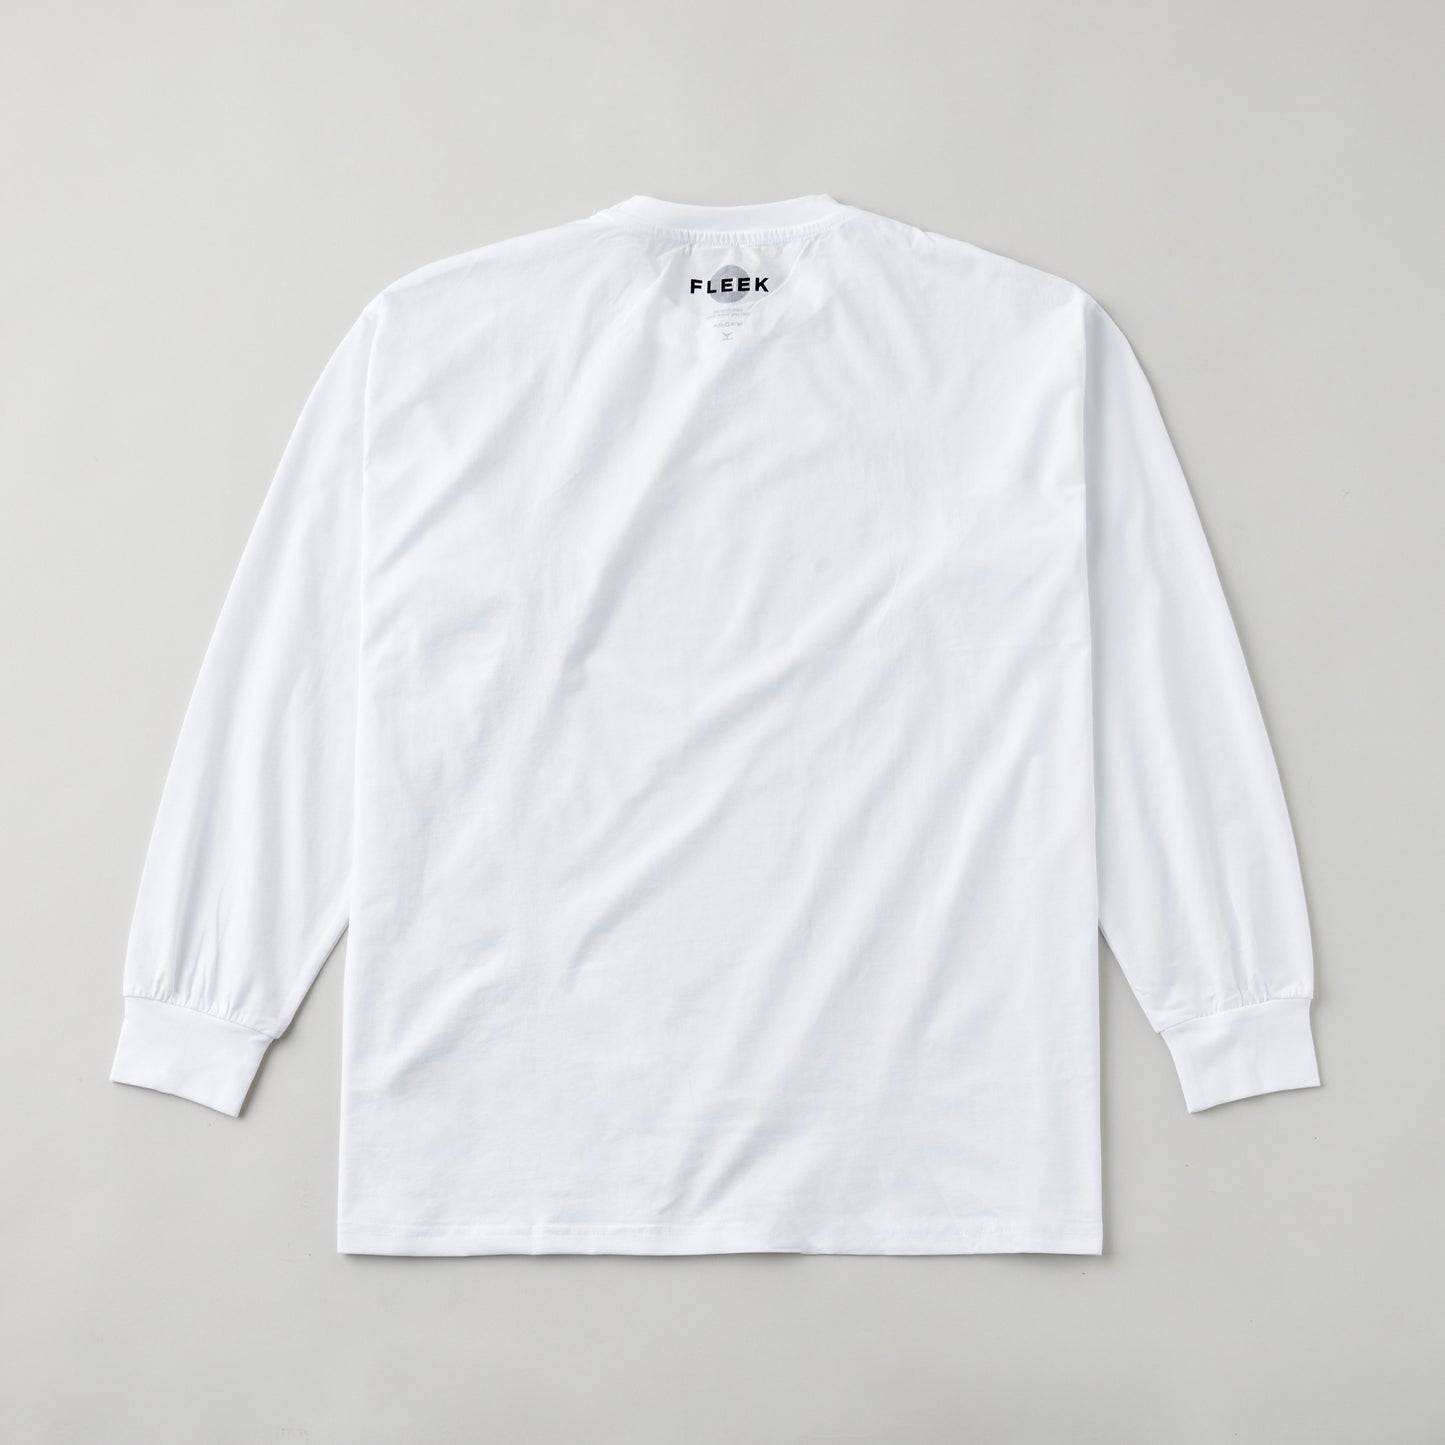 FLEEK ドライクルーネック ロングスリーブシャツ ホワイト グレーロゴ